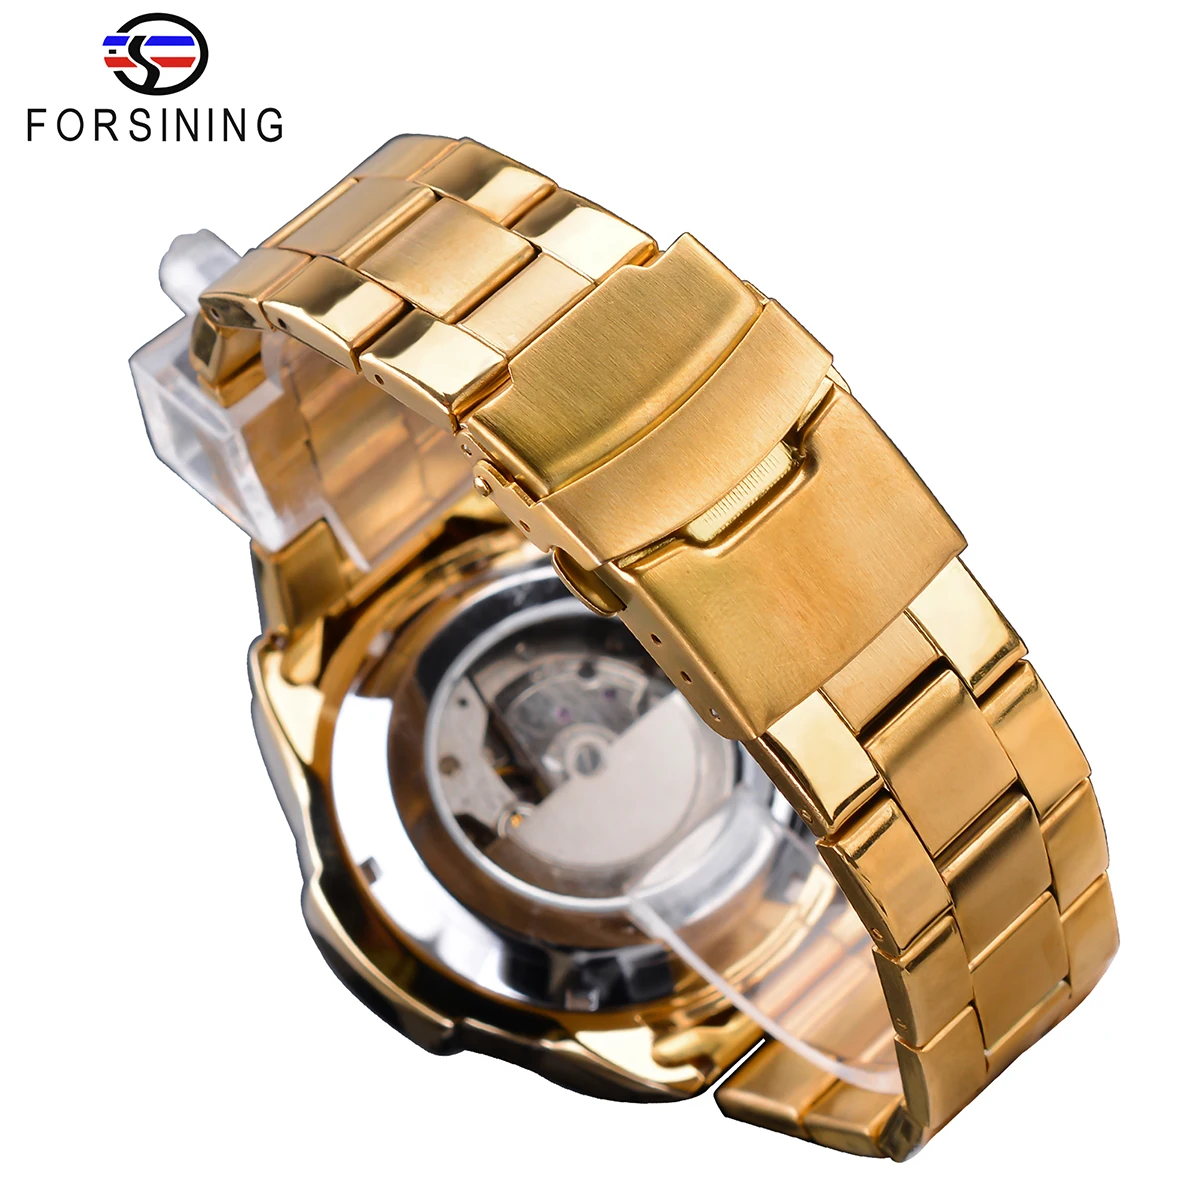 Forsining золотые автоматические часы для мужчин функция даты механические часы Relogio Masculino Стальные наручные часы водонепроницаемые мужские часы